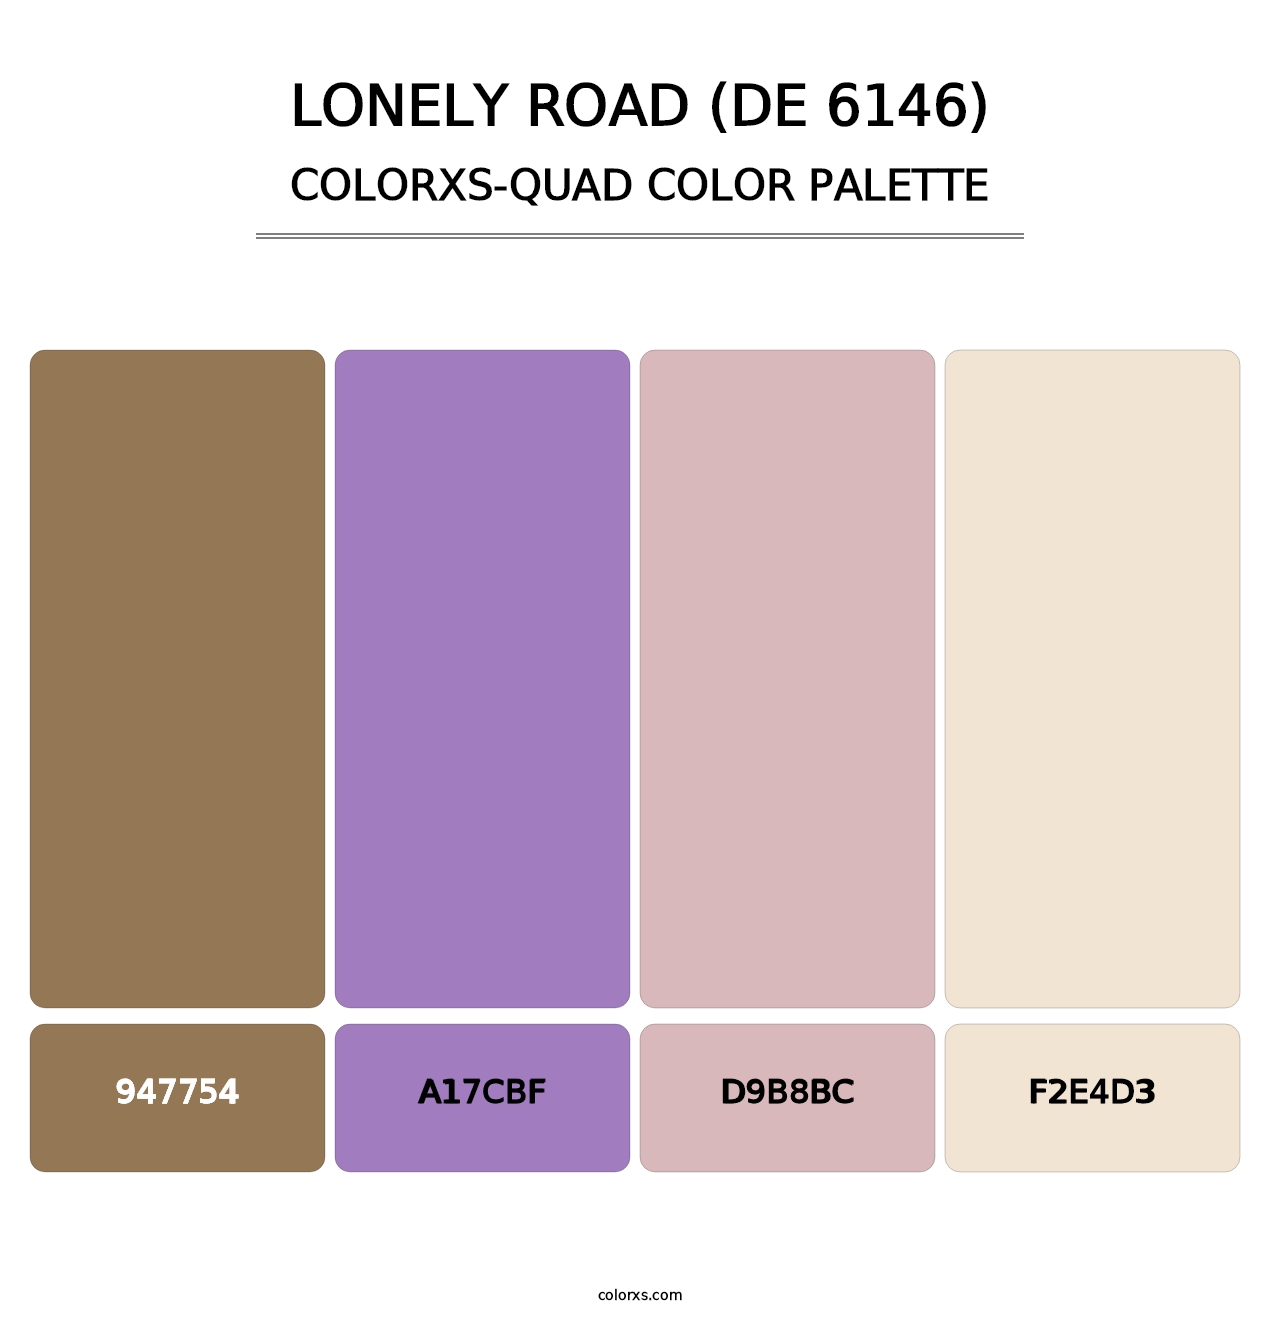 Lonely Road (DE 6146) - Colorxs Quad Palette